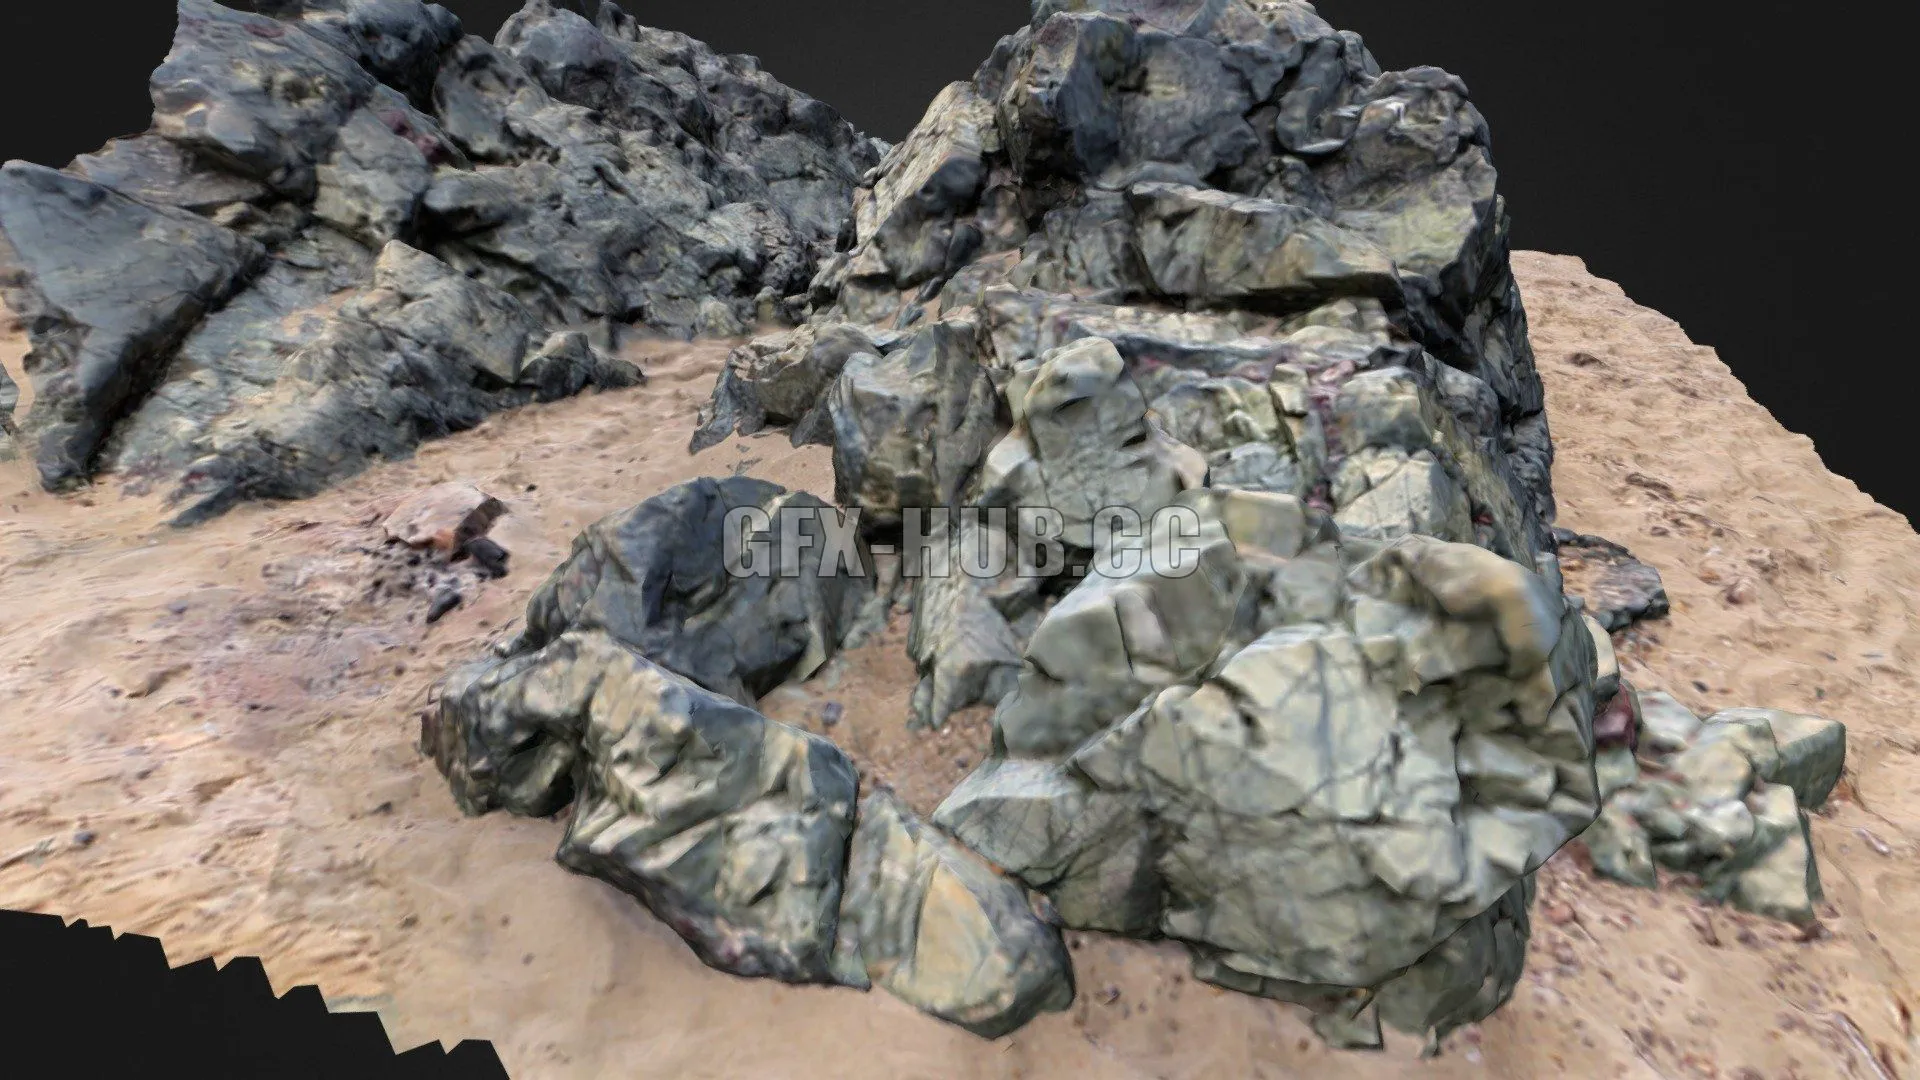 PBR Game 3D Model – llanddwyn Rock formation